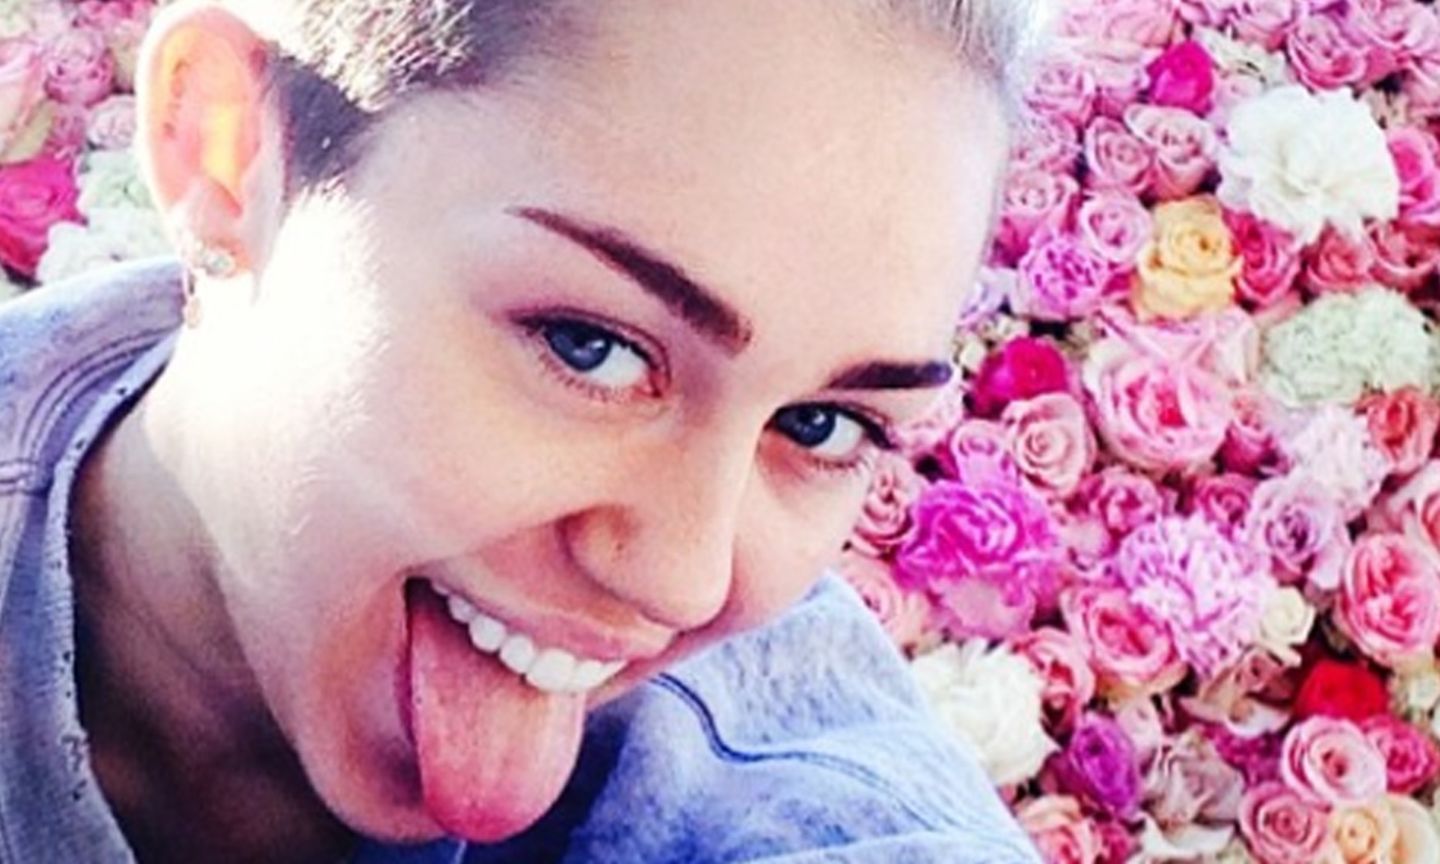 "Ich kann meinen Schätzen gar nicht genug danken!", schrieb die 21-jährige Miley Cyrus zu dem Bild und verlinkte dahinter zwei ihrer Freunde.